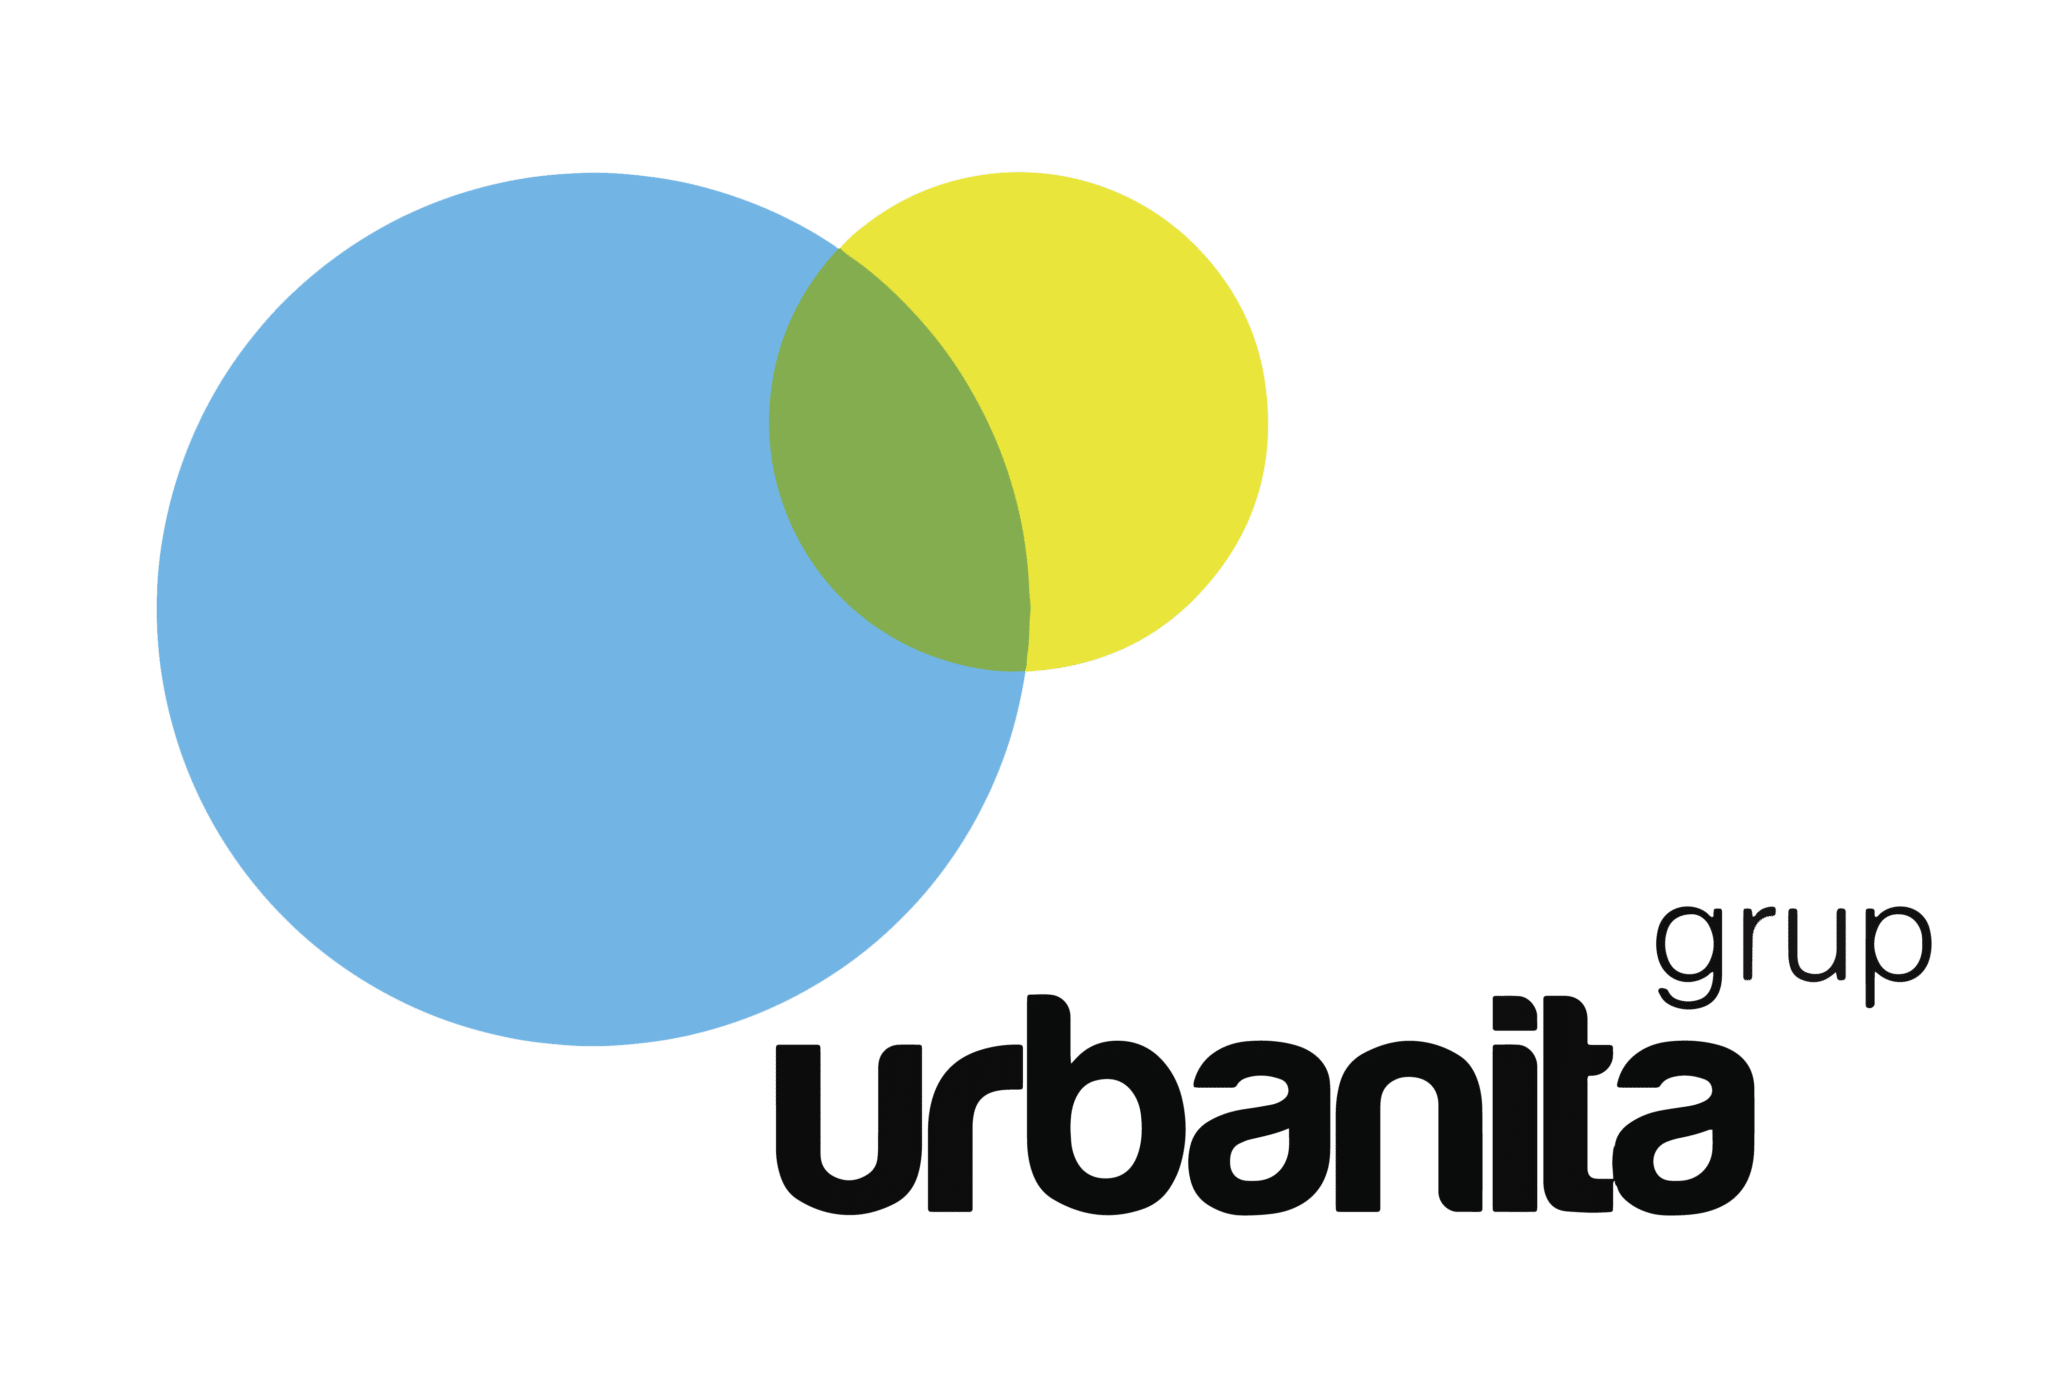 Urbanita grup